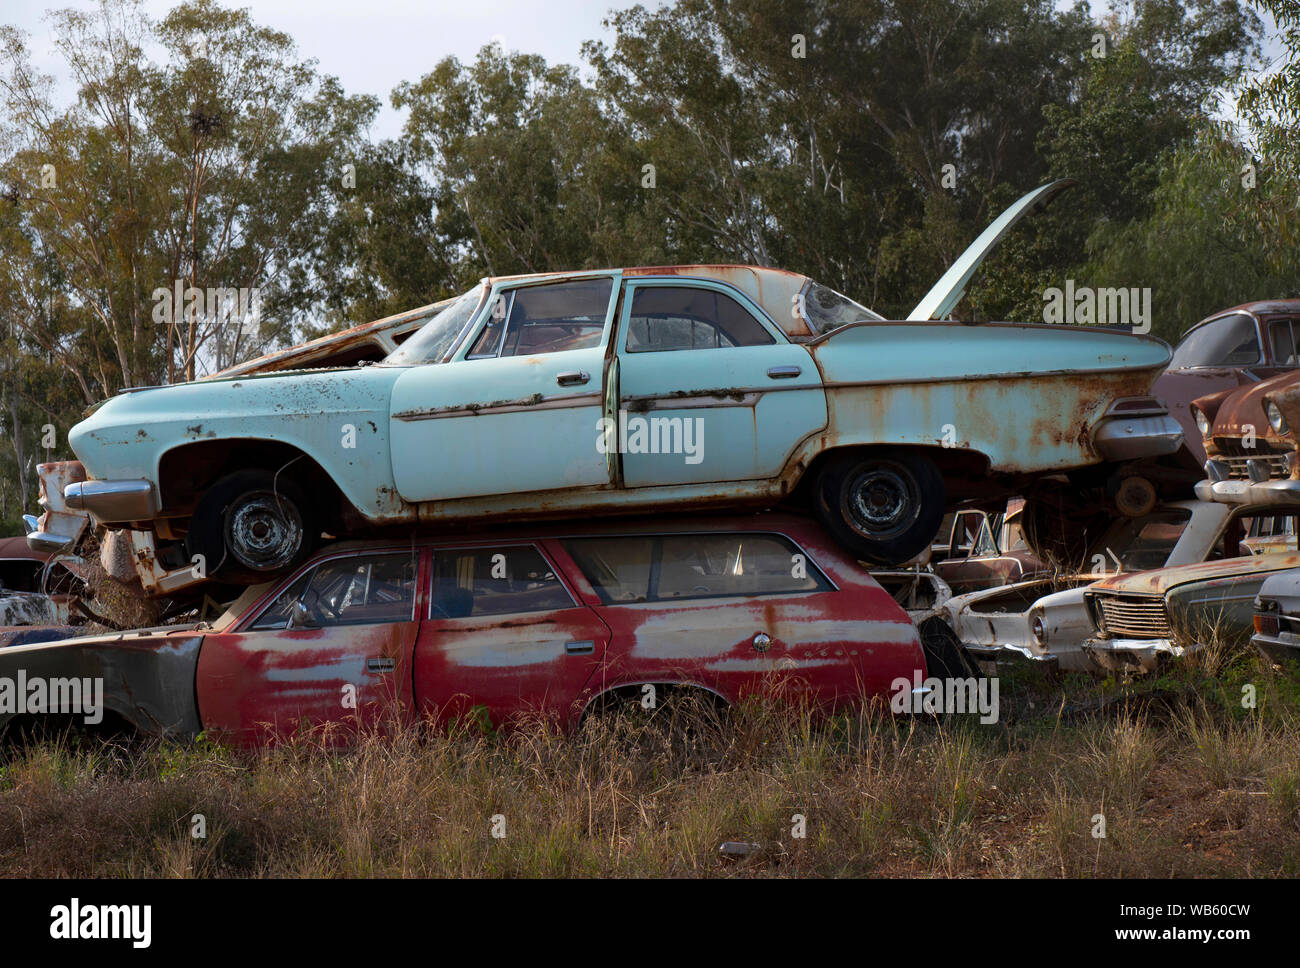 Rusty de vieilles voitures des années 50 et 60, abandonné dans un cimetière de voiture chantier de relevage dans les régions rurales de l'Australie. Banque D'Images